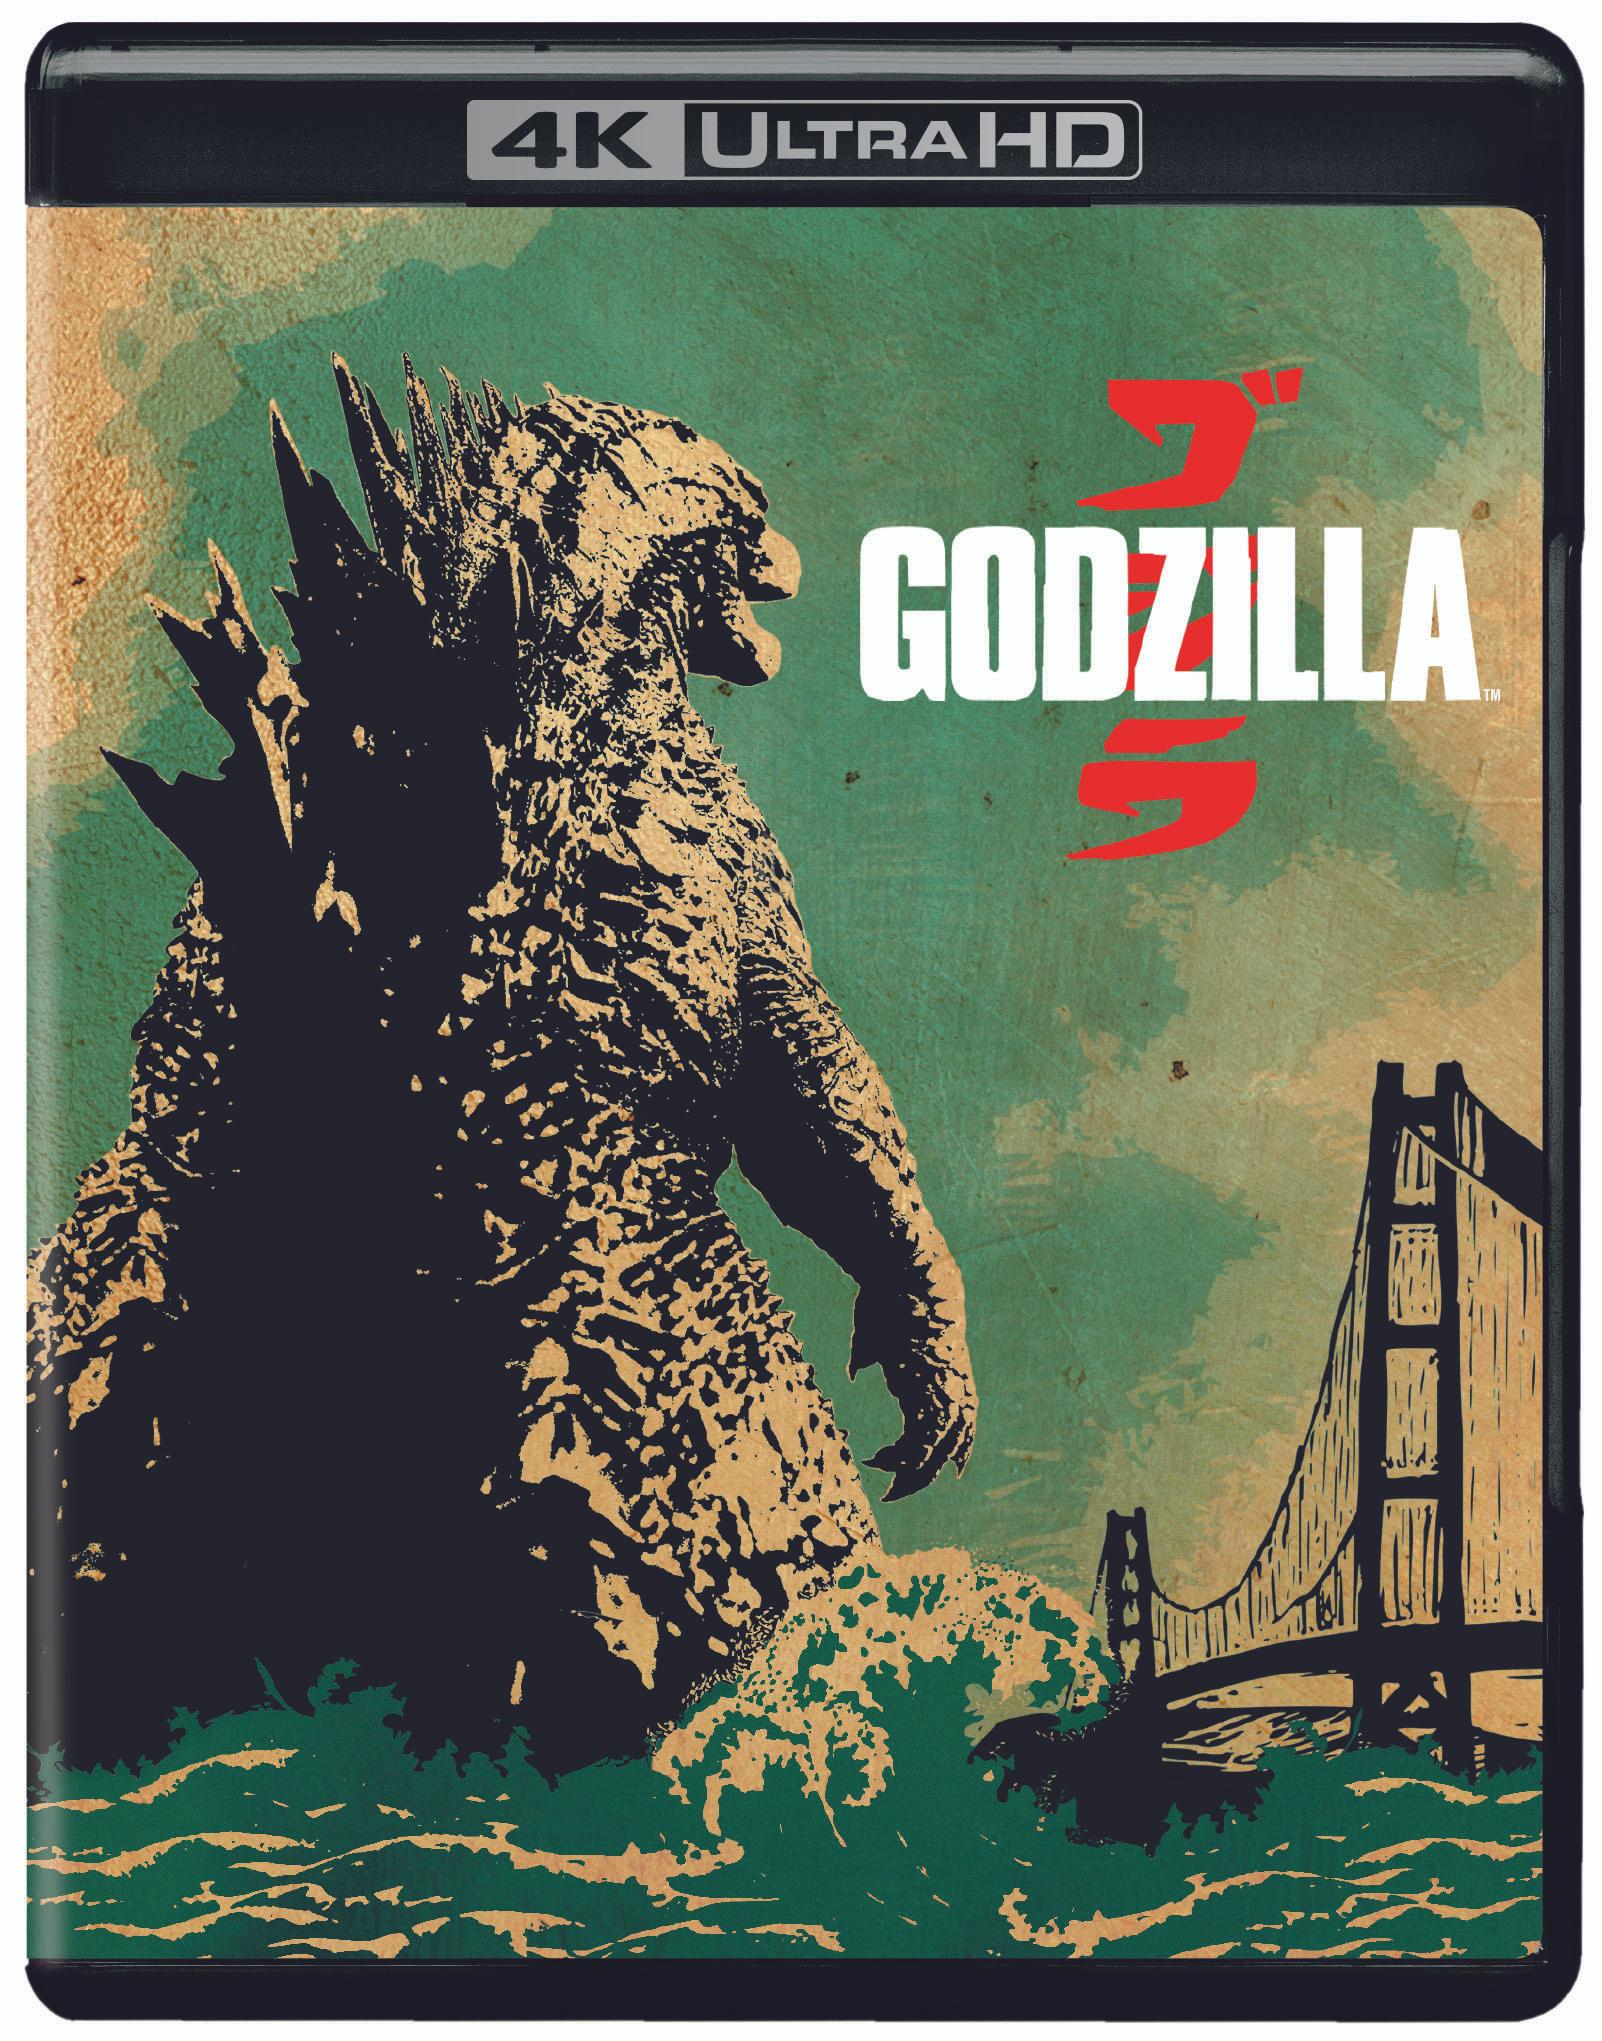 Godzilla (4K Ultra HD + Blu-ray + Digital Copy) - UHD [ 2014 ]  - Sci Fi Movies On 4K Ultra HD Blu-ray - Movies On GRUV